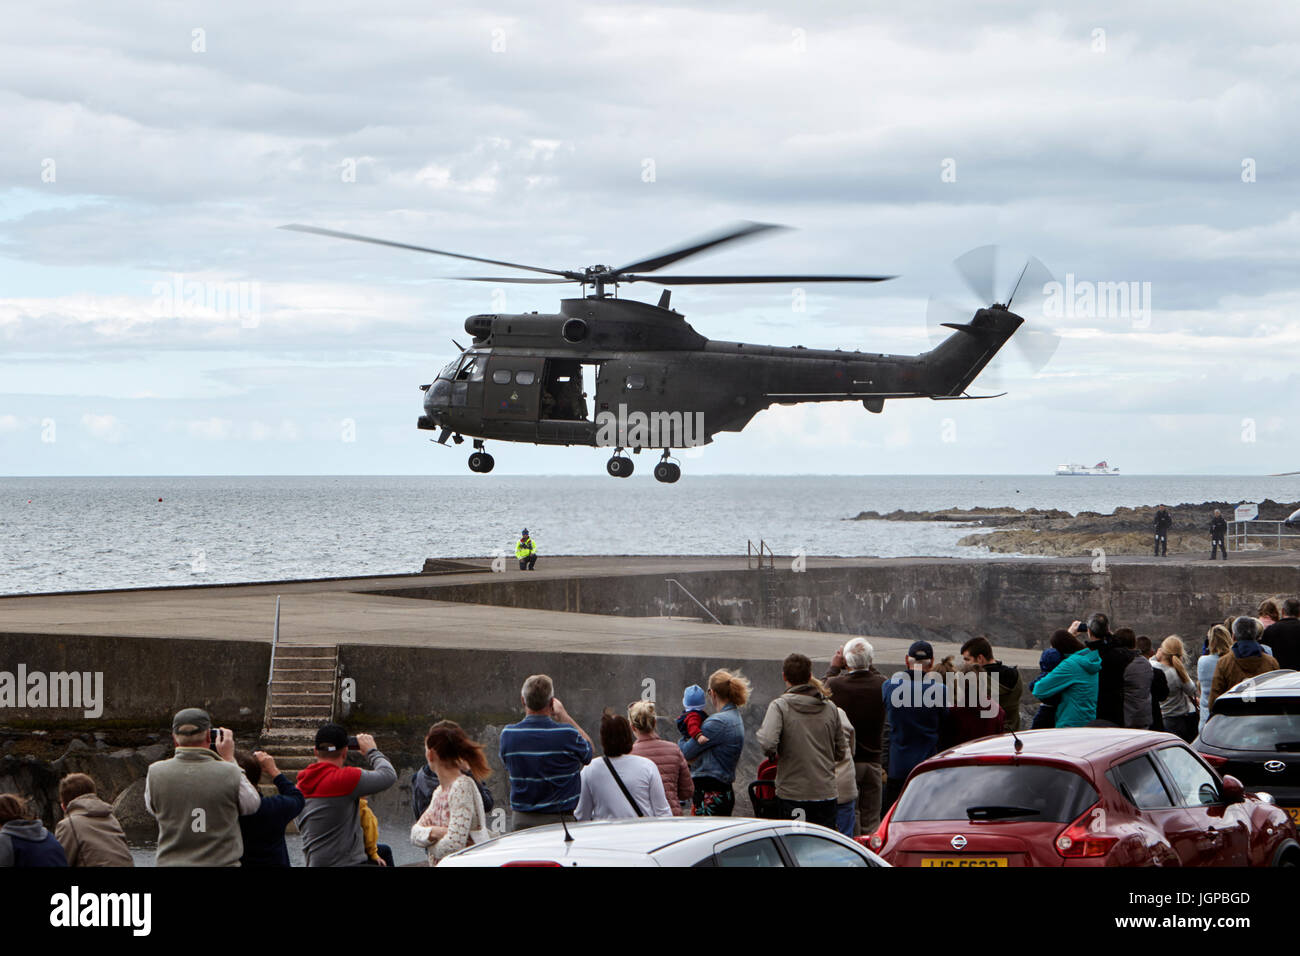 Royal Air Force XW209 hélicoptère Westland puma se prépare à décoller de la journée nationale des forces armées Bangor Northern Ireland Banque D'Images